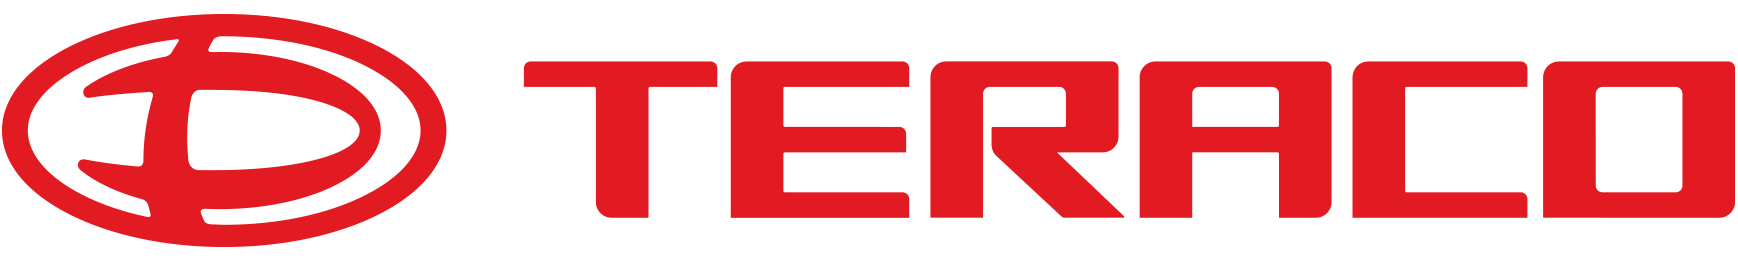 daehan motors logo 1